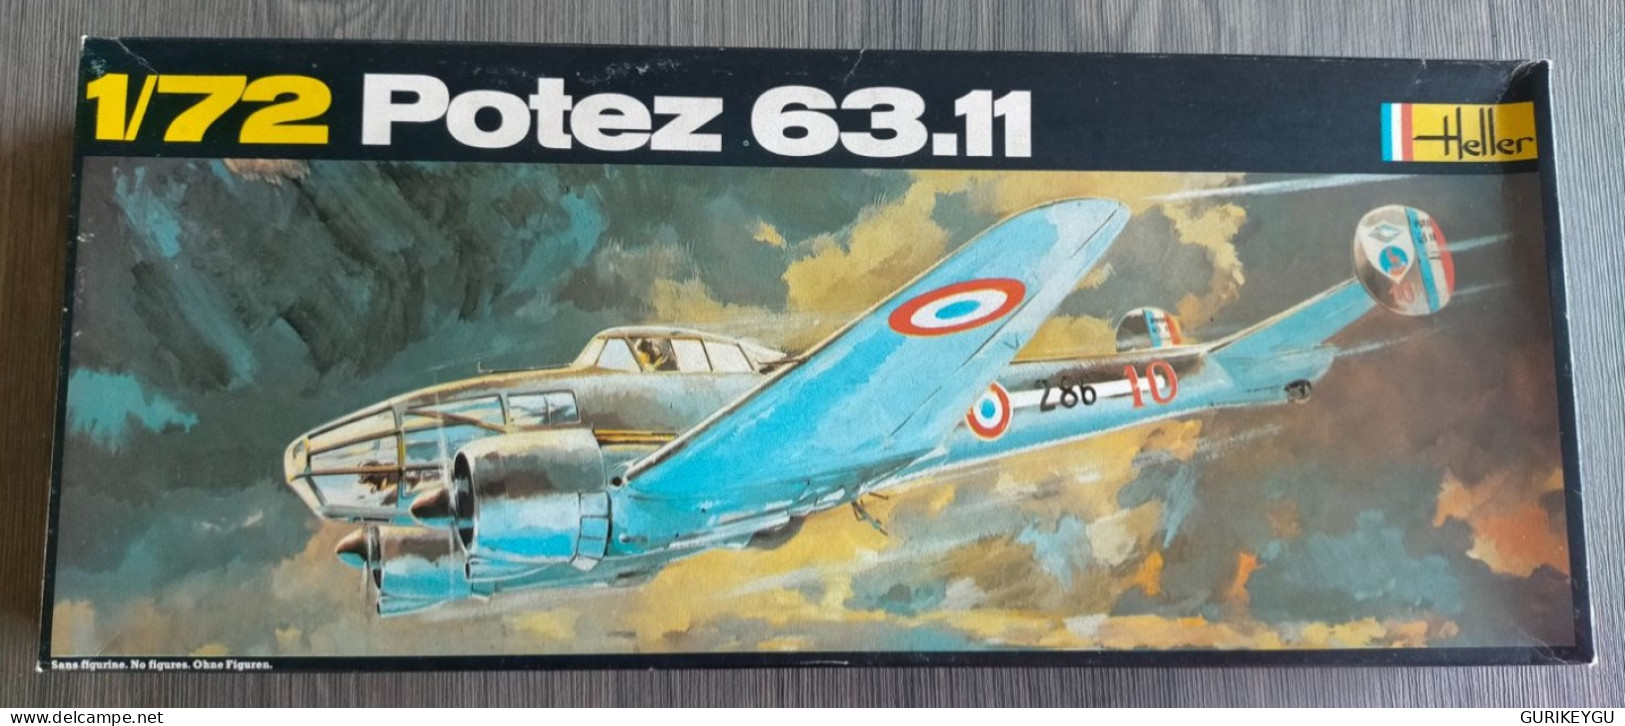 Rarissime Maquette AVION 1/72 Potez 63.11 Heller FRANCE N° 396 Ancienne EO NEUF Boite Fermée D'origine Années 70 - Aviazione